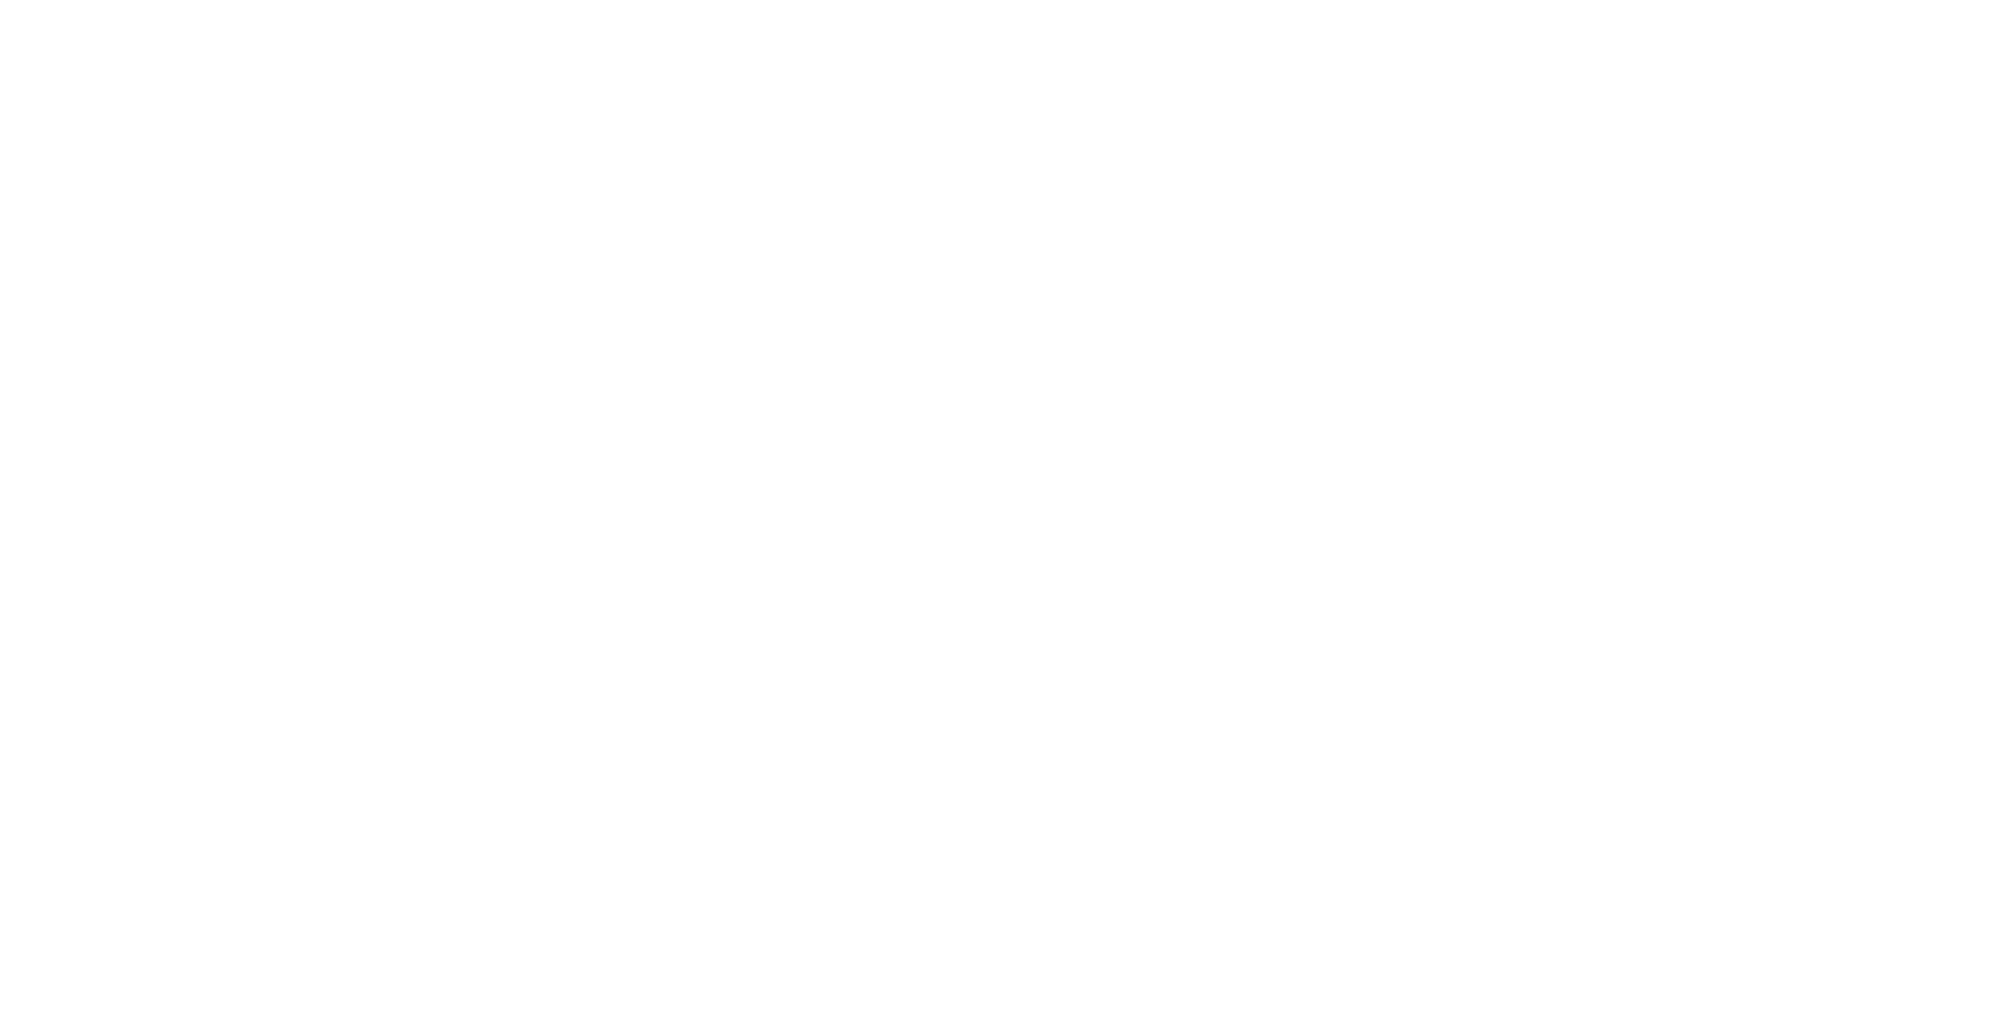 Tibz // Bye Bye